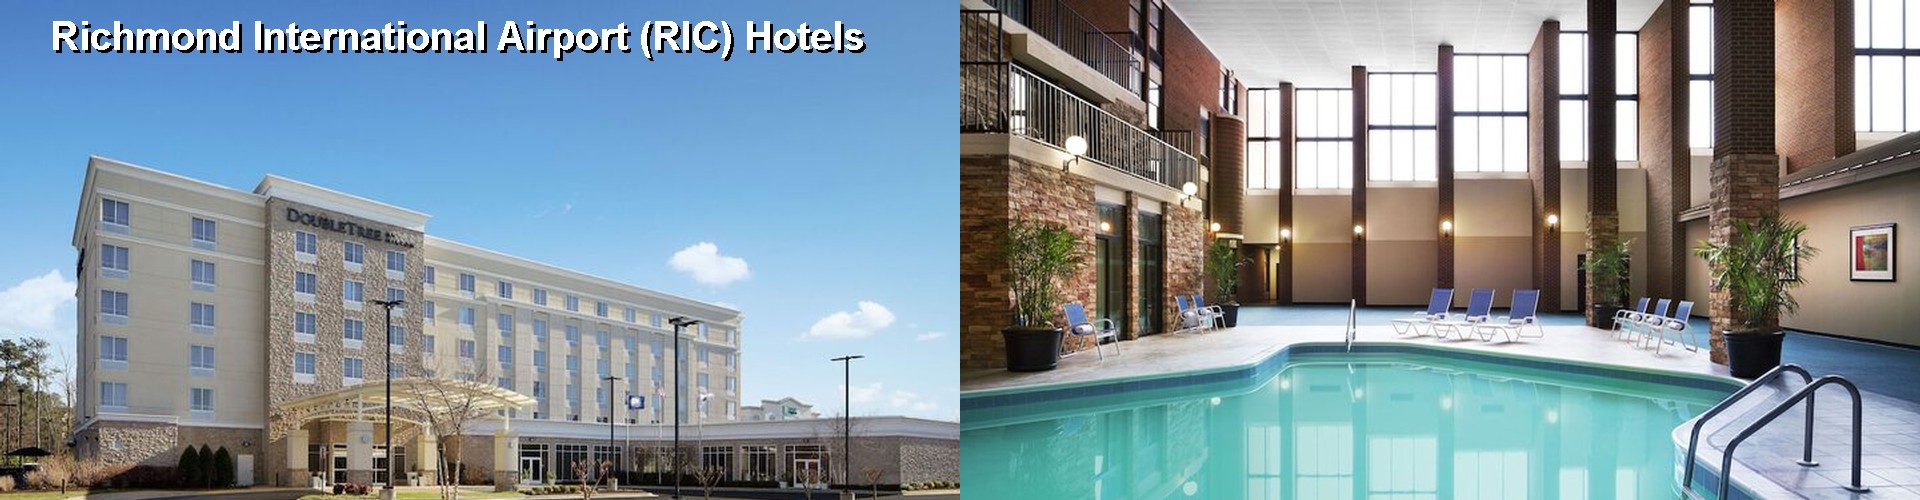 4 Best Hotels near Richmond International Airport (RIC)